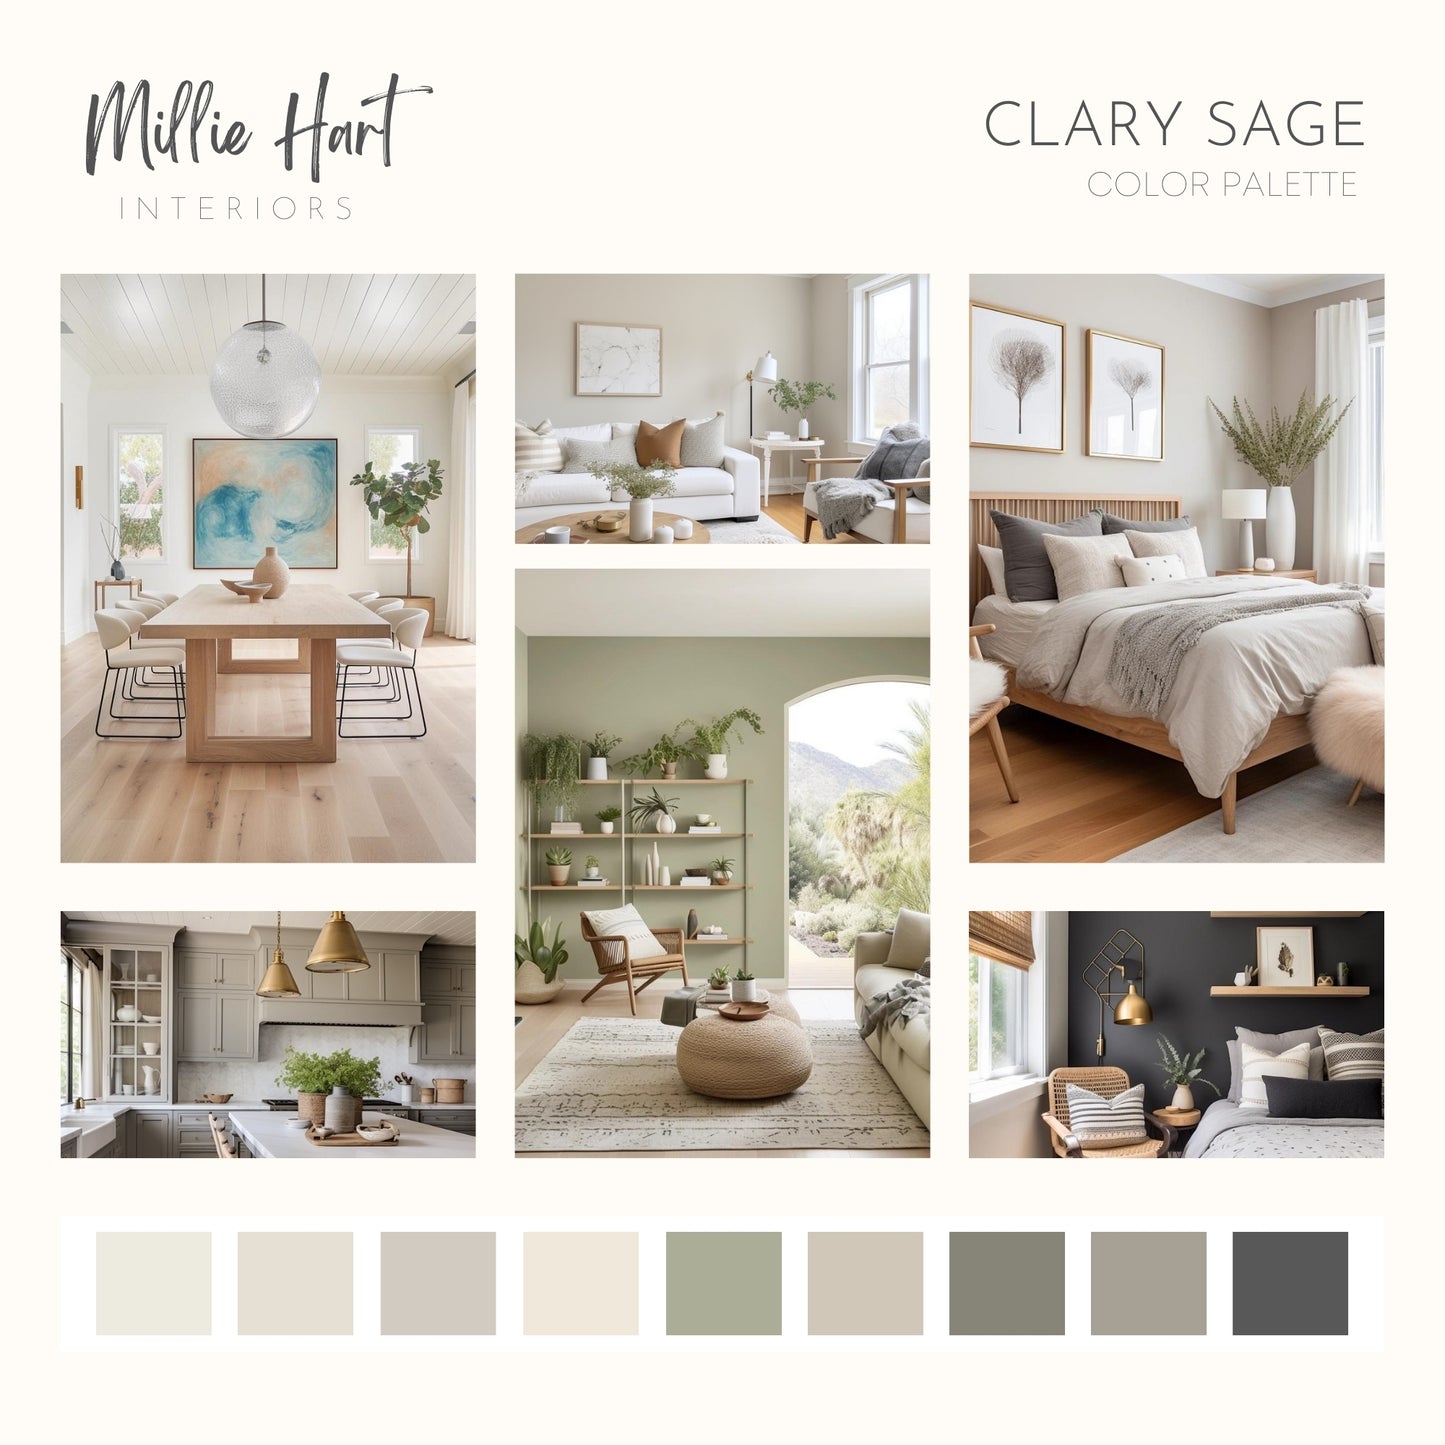 Clary Sage Sherwin Williams Paint Palette, Warm Neutral Interior Paint Colors, Cottage Color Scheme, Creamy